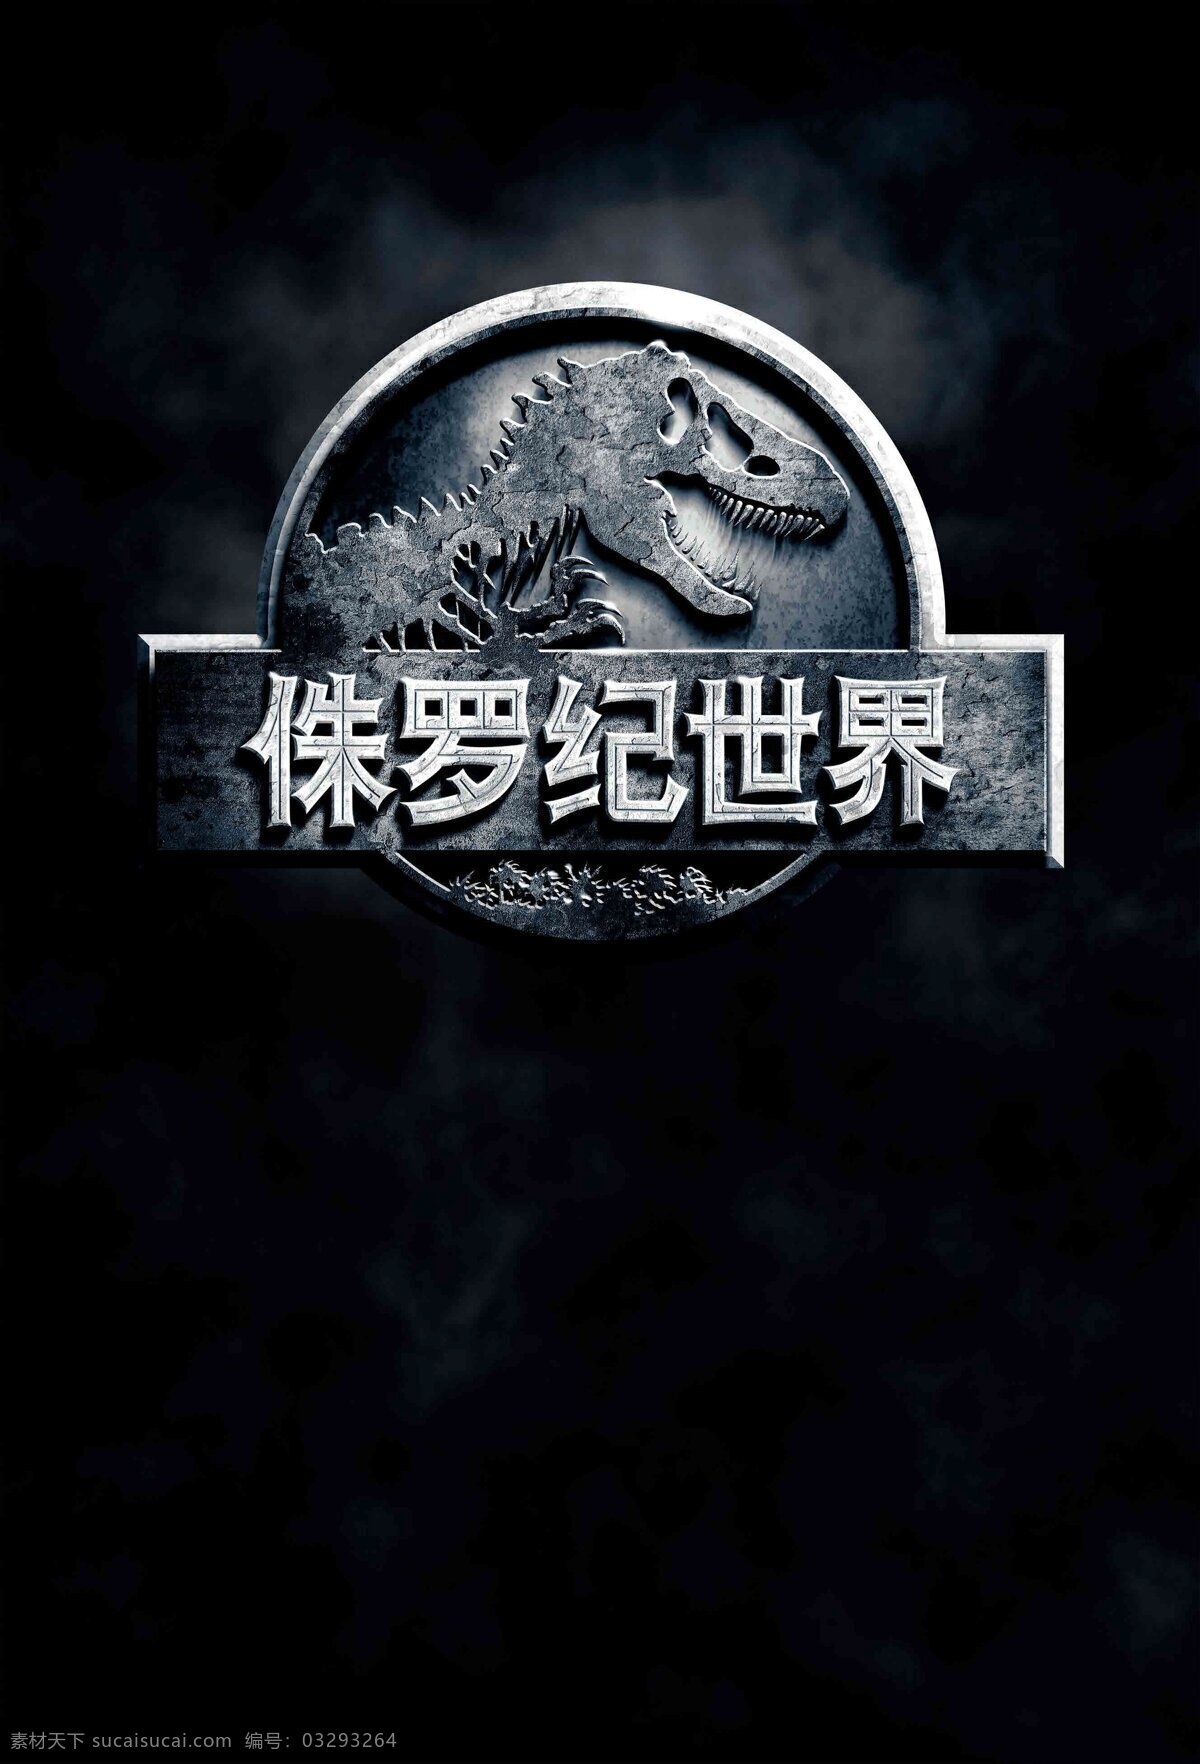 侏罗纪世界 电影 海报 壁纸 恐龙 科幻 惊悚 冒险 动作 侏罗纪 好莱坞 文化艺术 影视娱乐 黑色